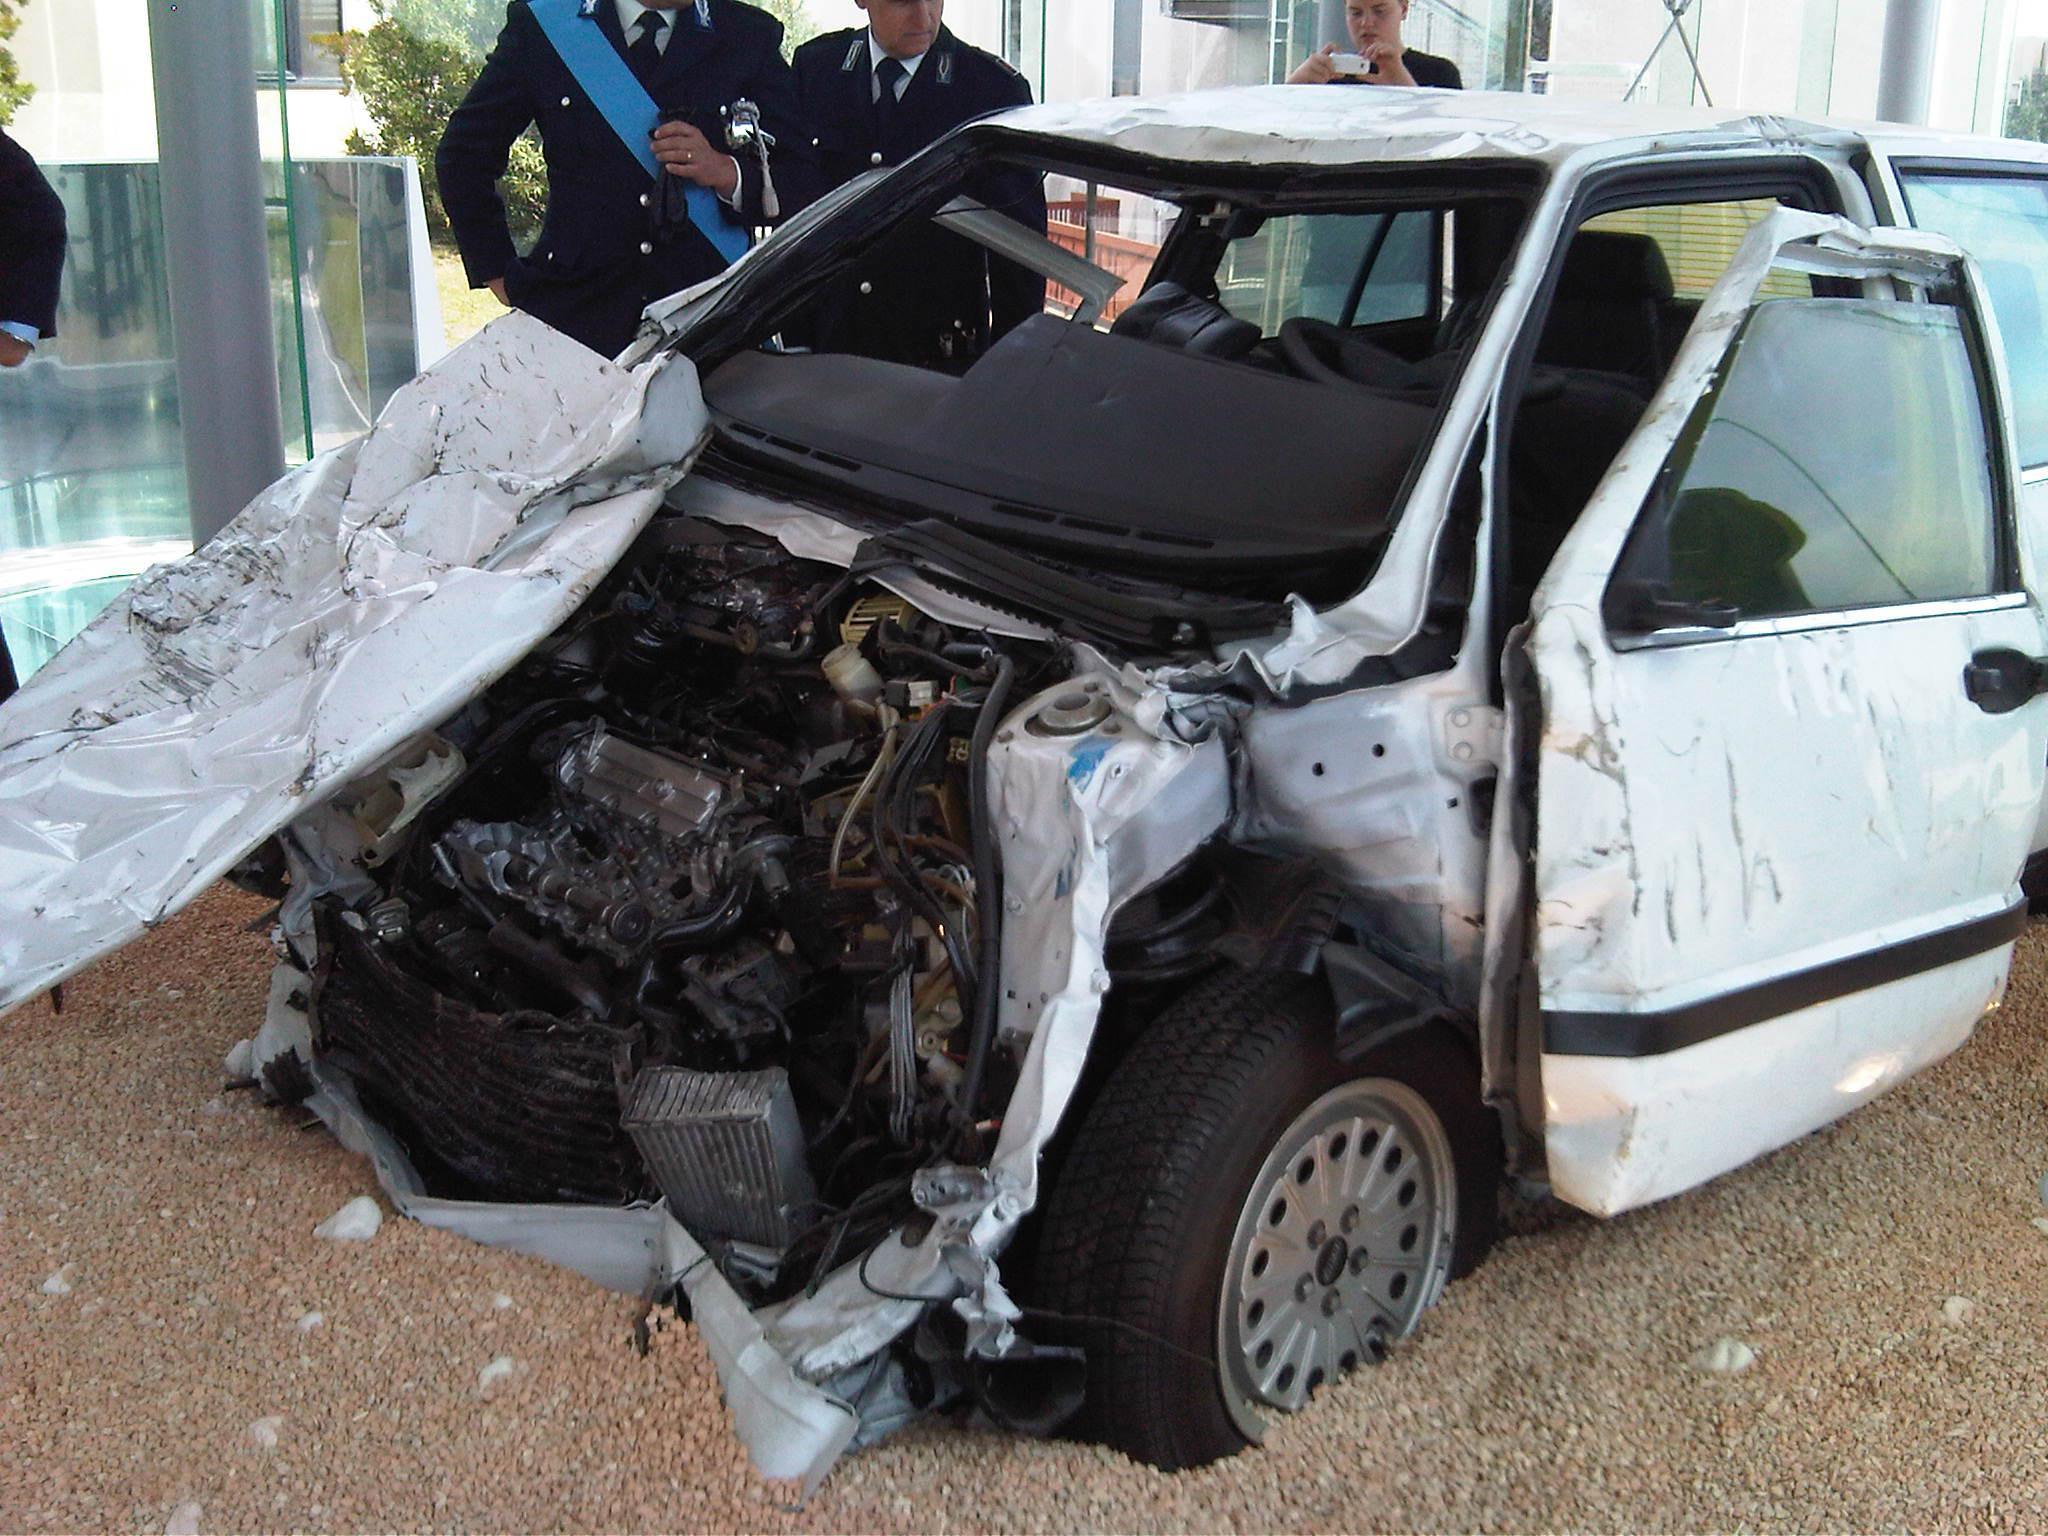 La macchina Fiat Croma bianca dove viaggiavano il magistrato, la moglie e l’autista, colpita dall'esplosione. Oggi è di proprietà del Ministero della Giustizia, conservata in una teca a memoria del tragico evento